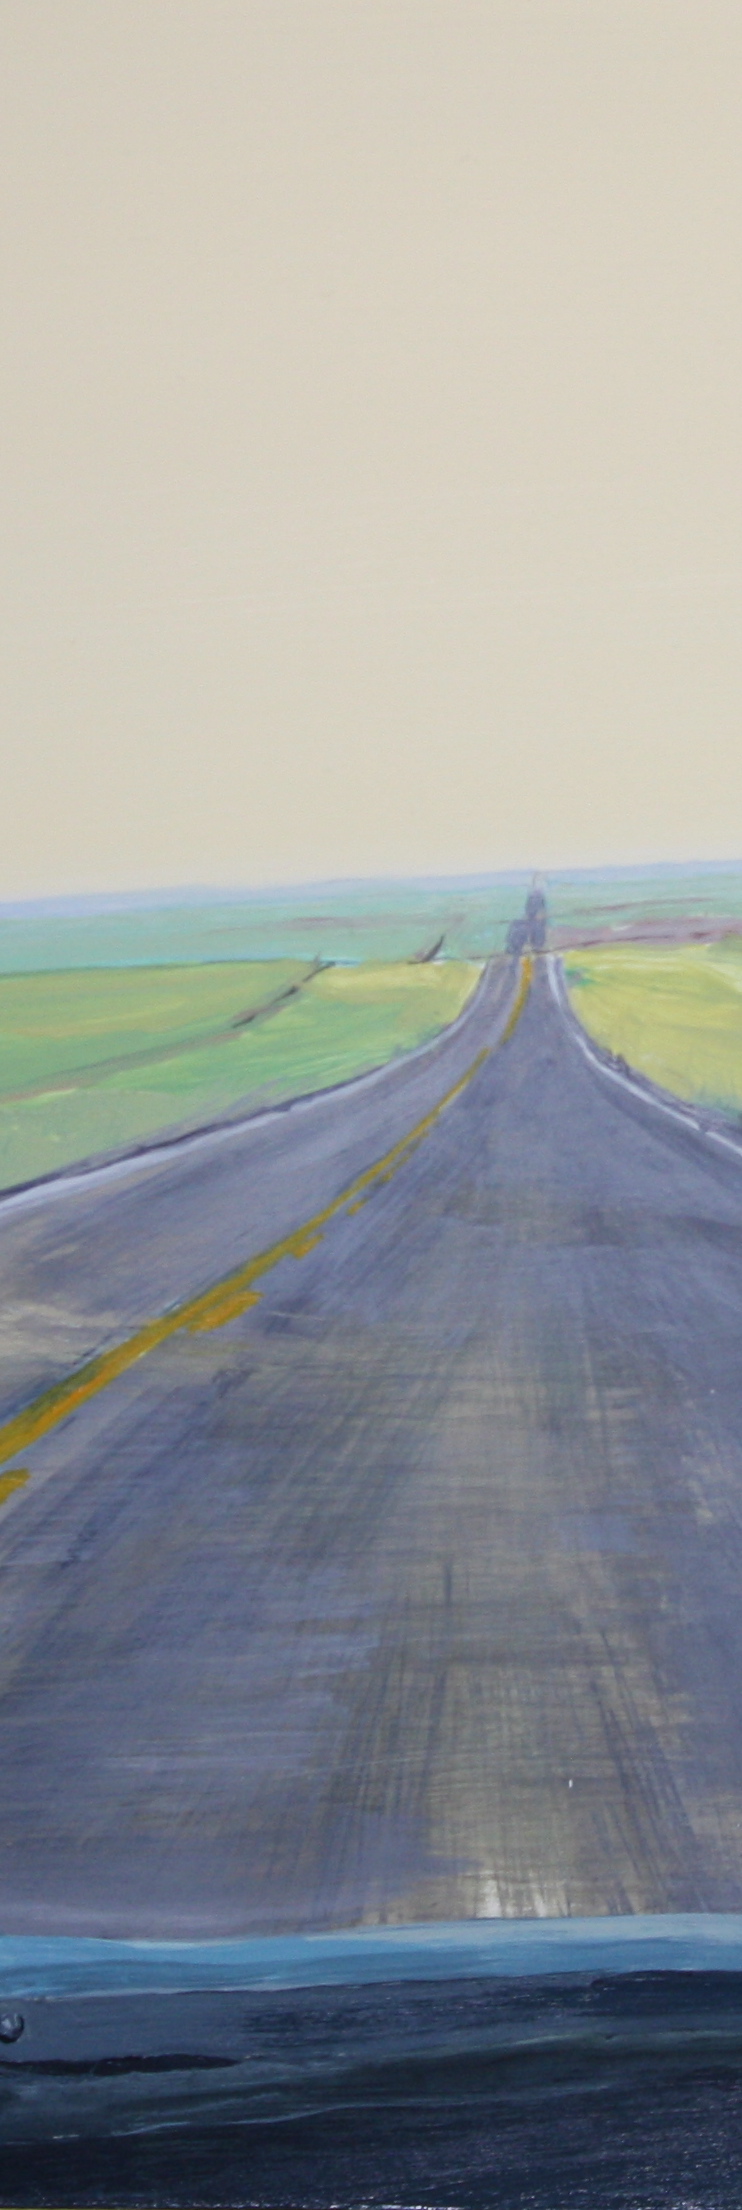 12 Roads: Paintings by Louie Va #3